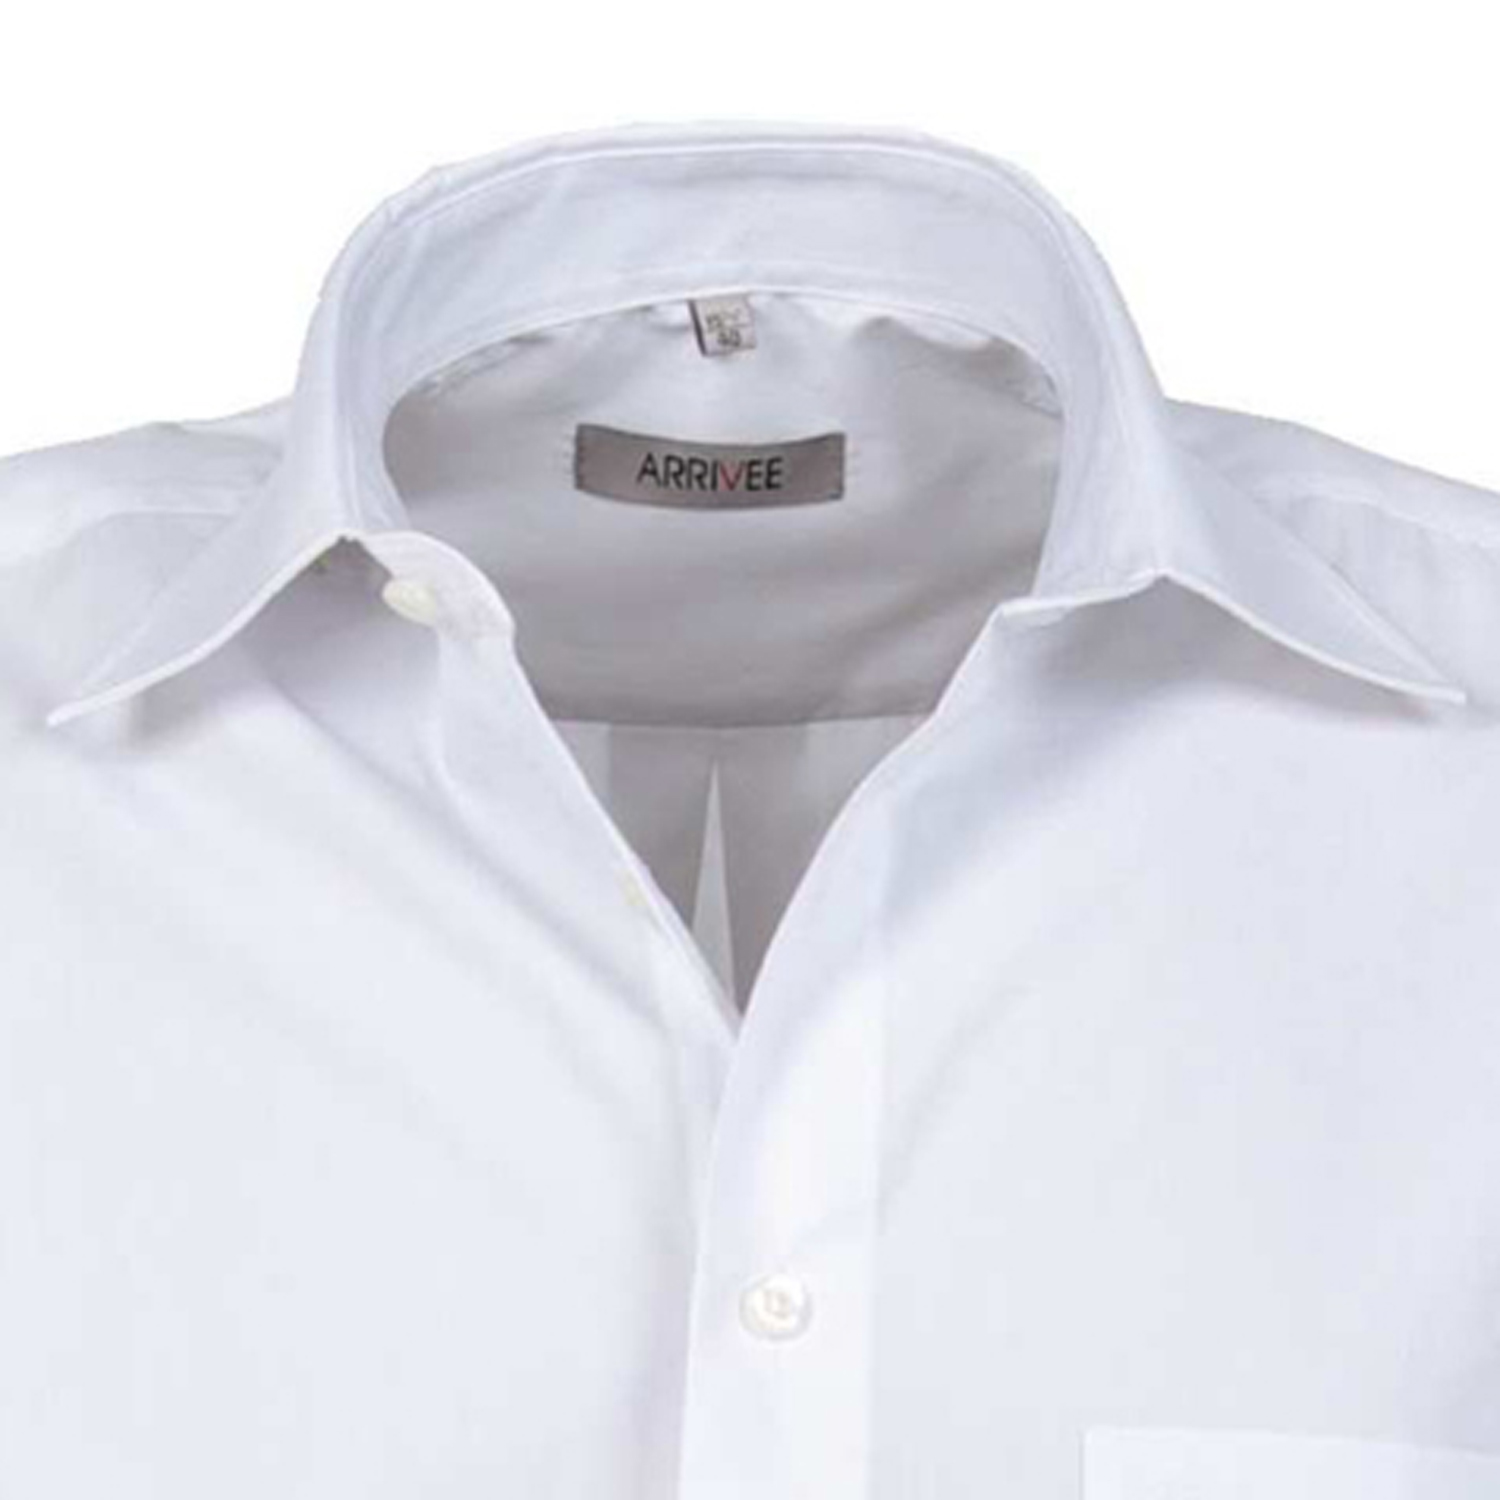 Langarm Hemd weiß von ARRIVEE in großen Größen von XL bis 8XL